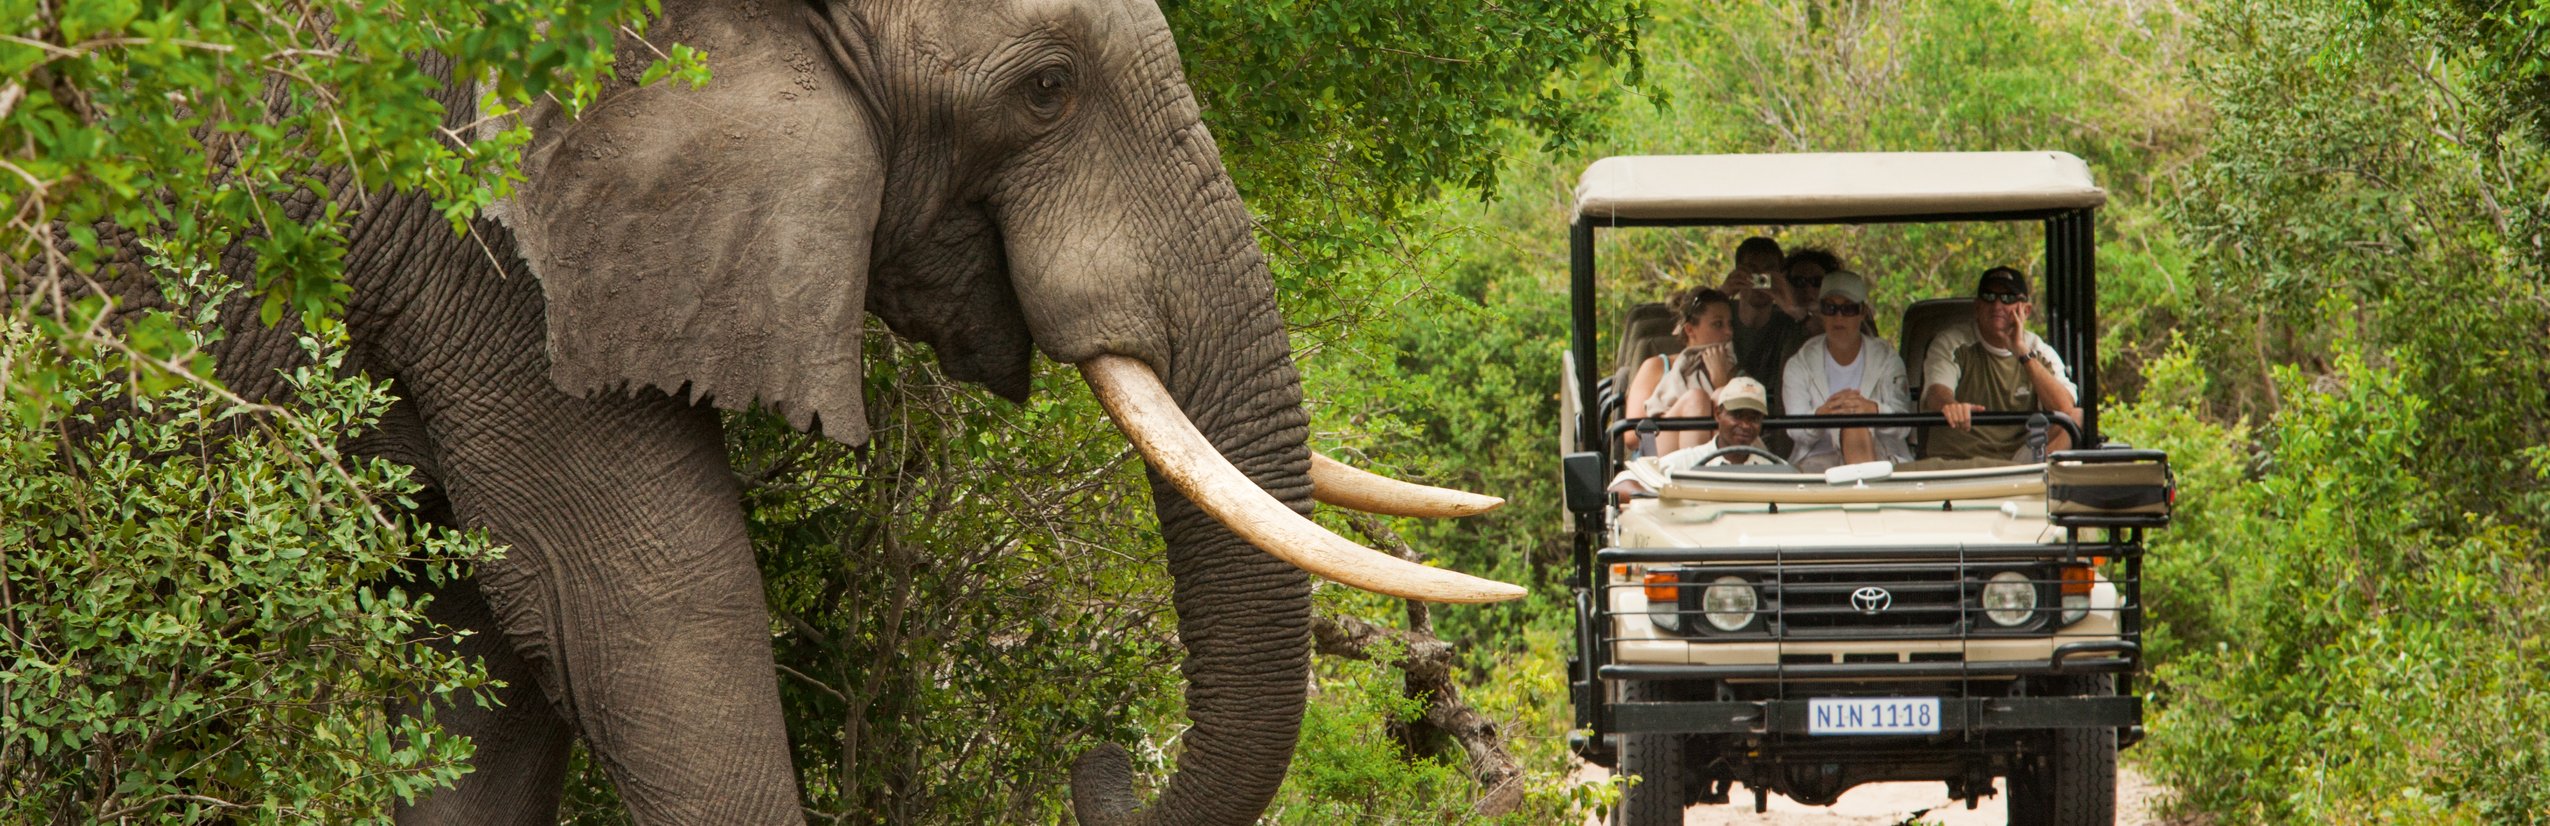 Einreise Südafrika Kinder - Einreisebestimmungen Südafrika mit Kindern - Elefant